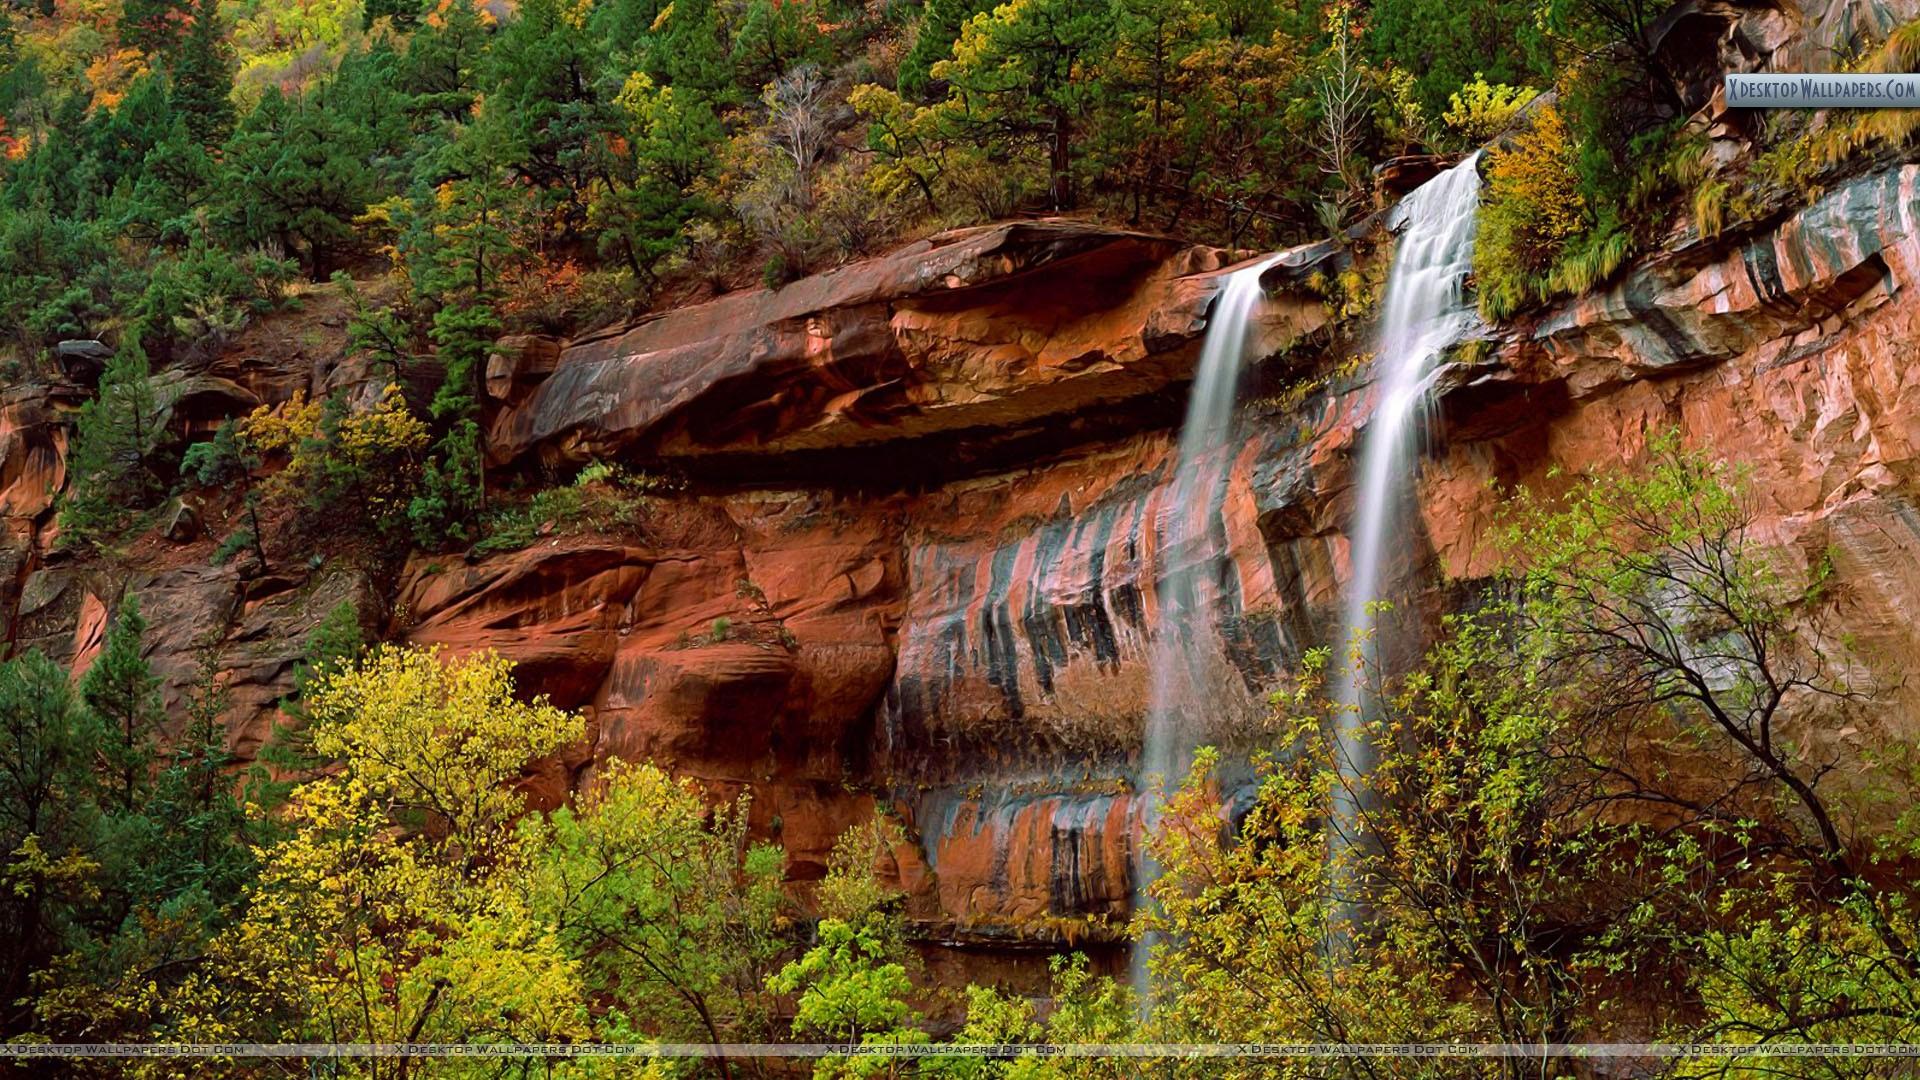 Zion National Park - HD Wallpaper 